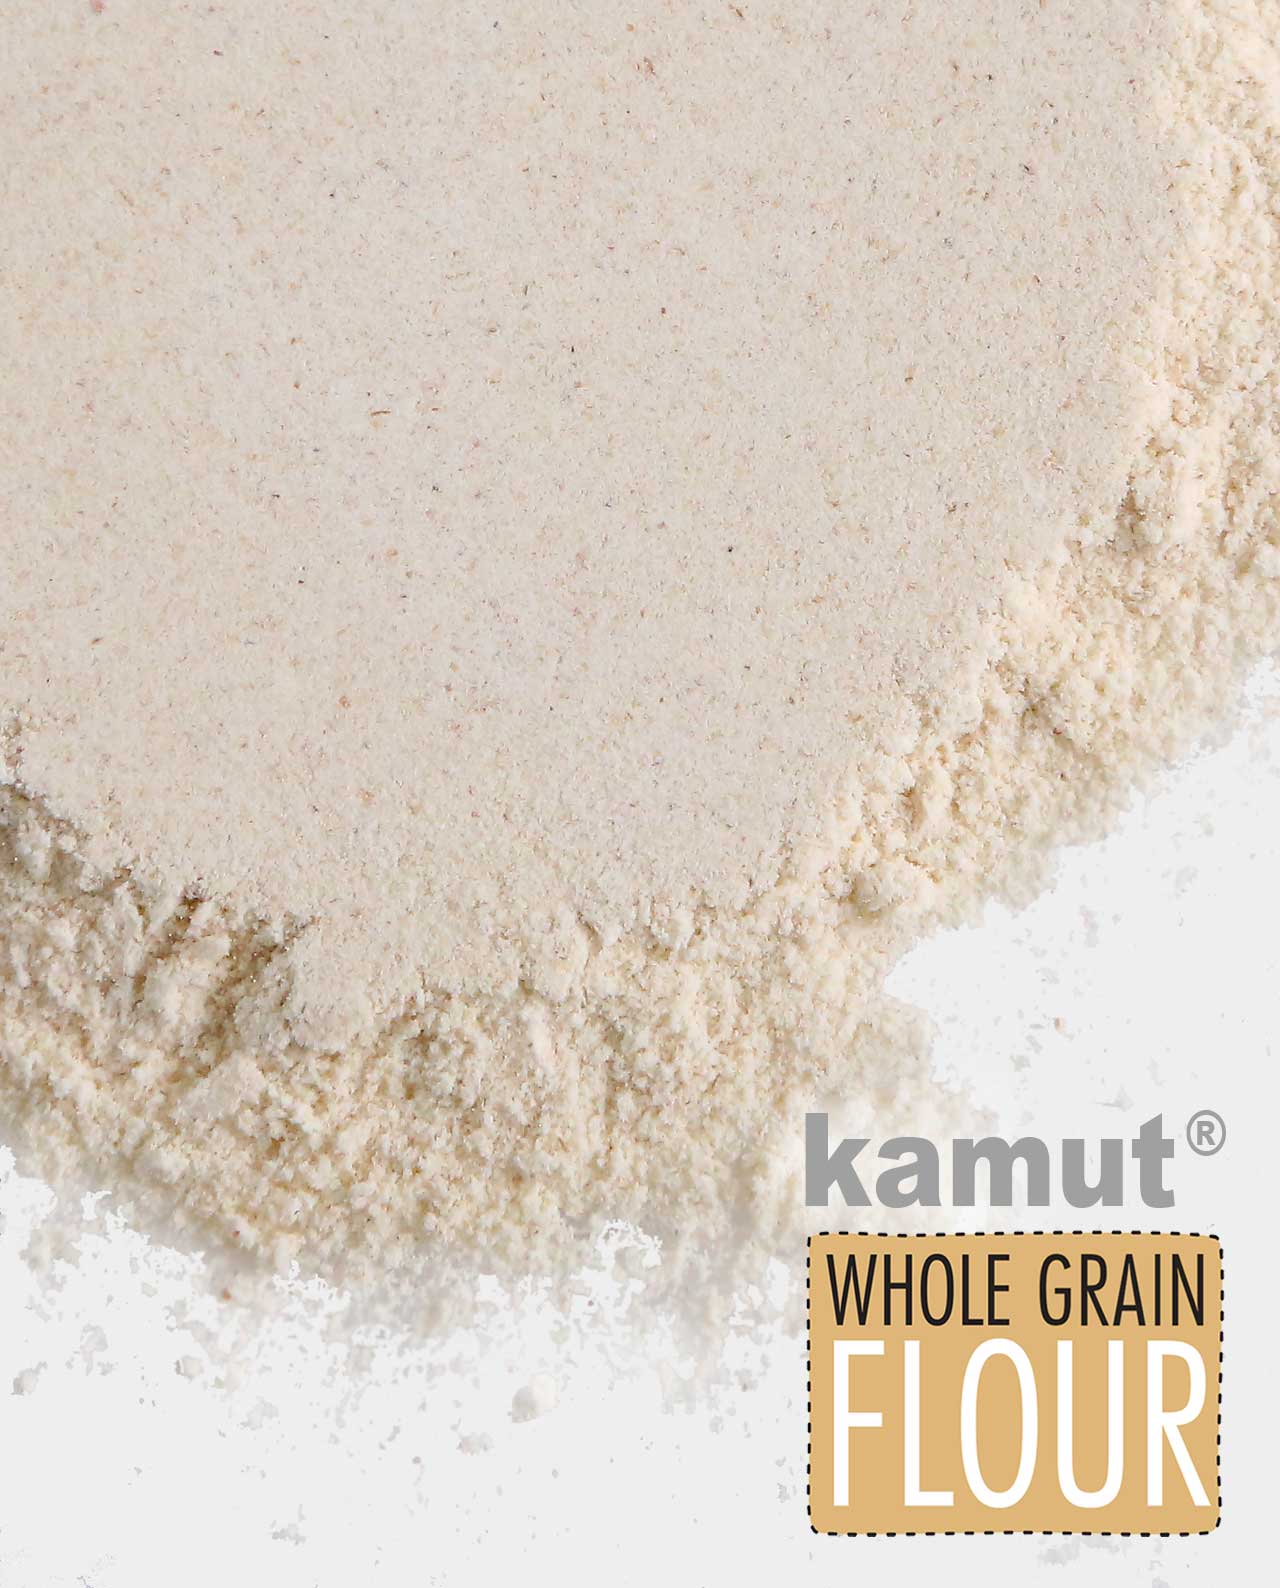 Kamut® Whole Grain Flour